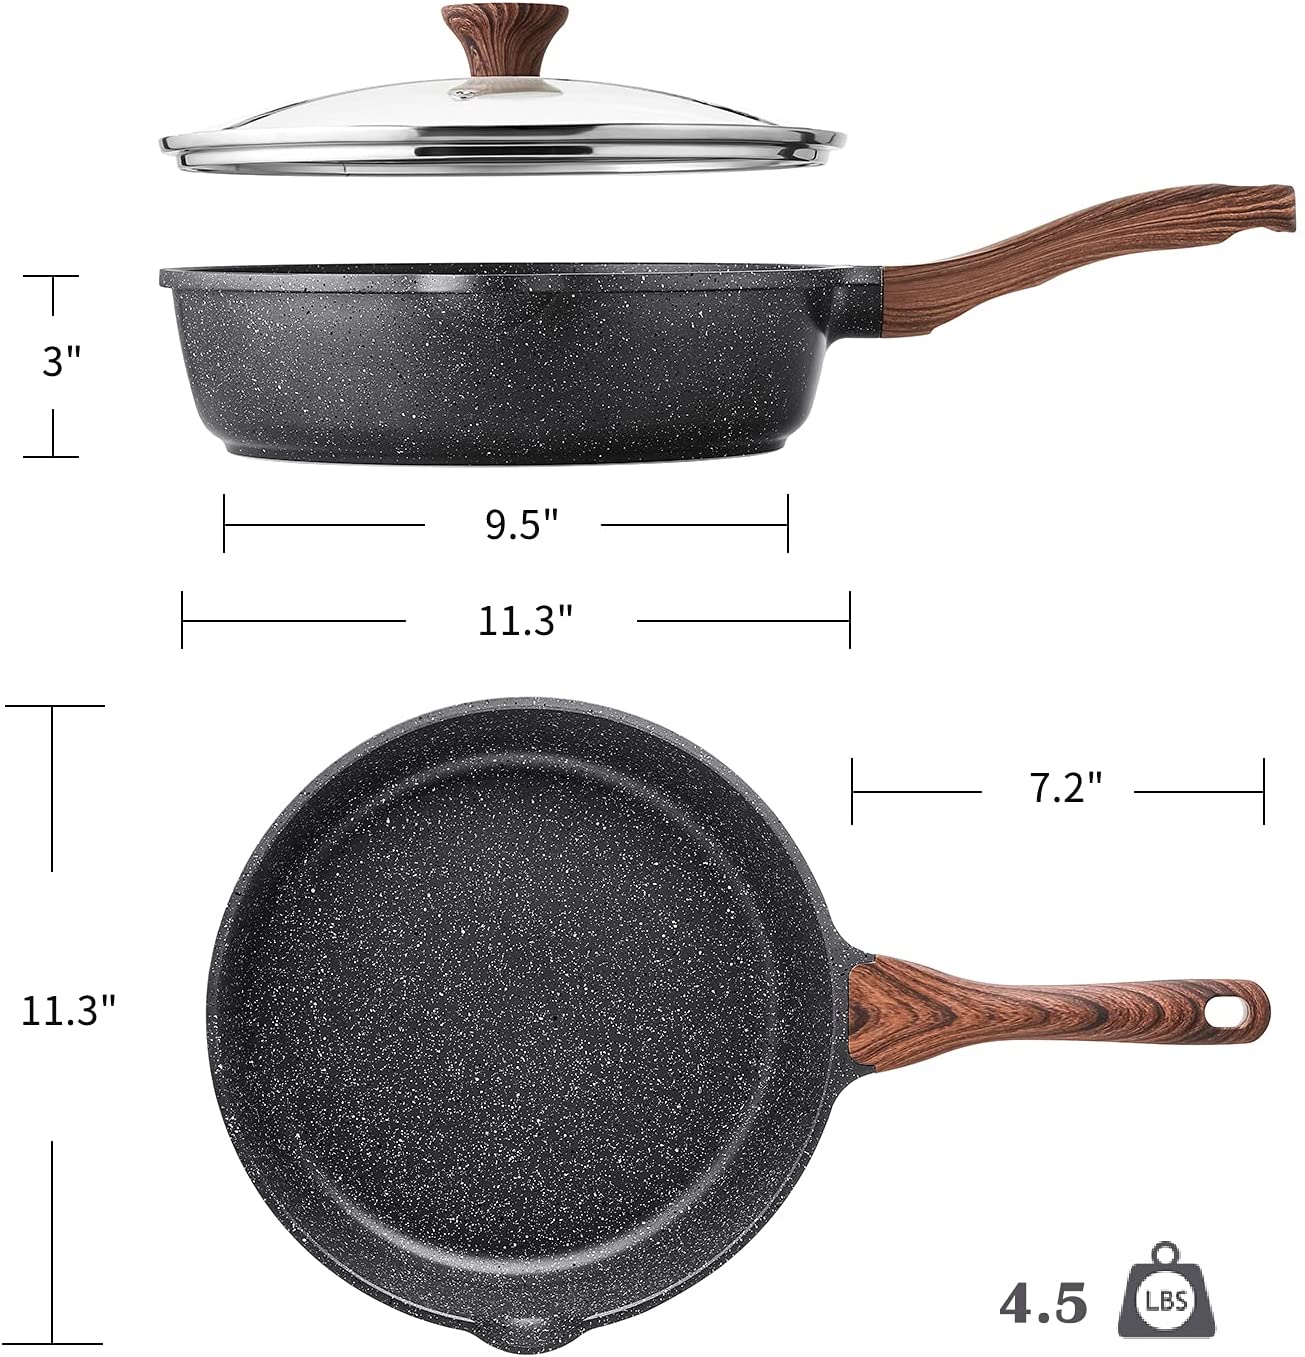  SENSARTE Nonstick Ceramic Frying Pan Skillet, 9.5